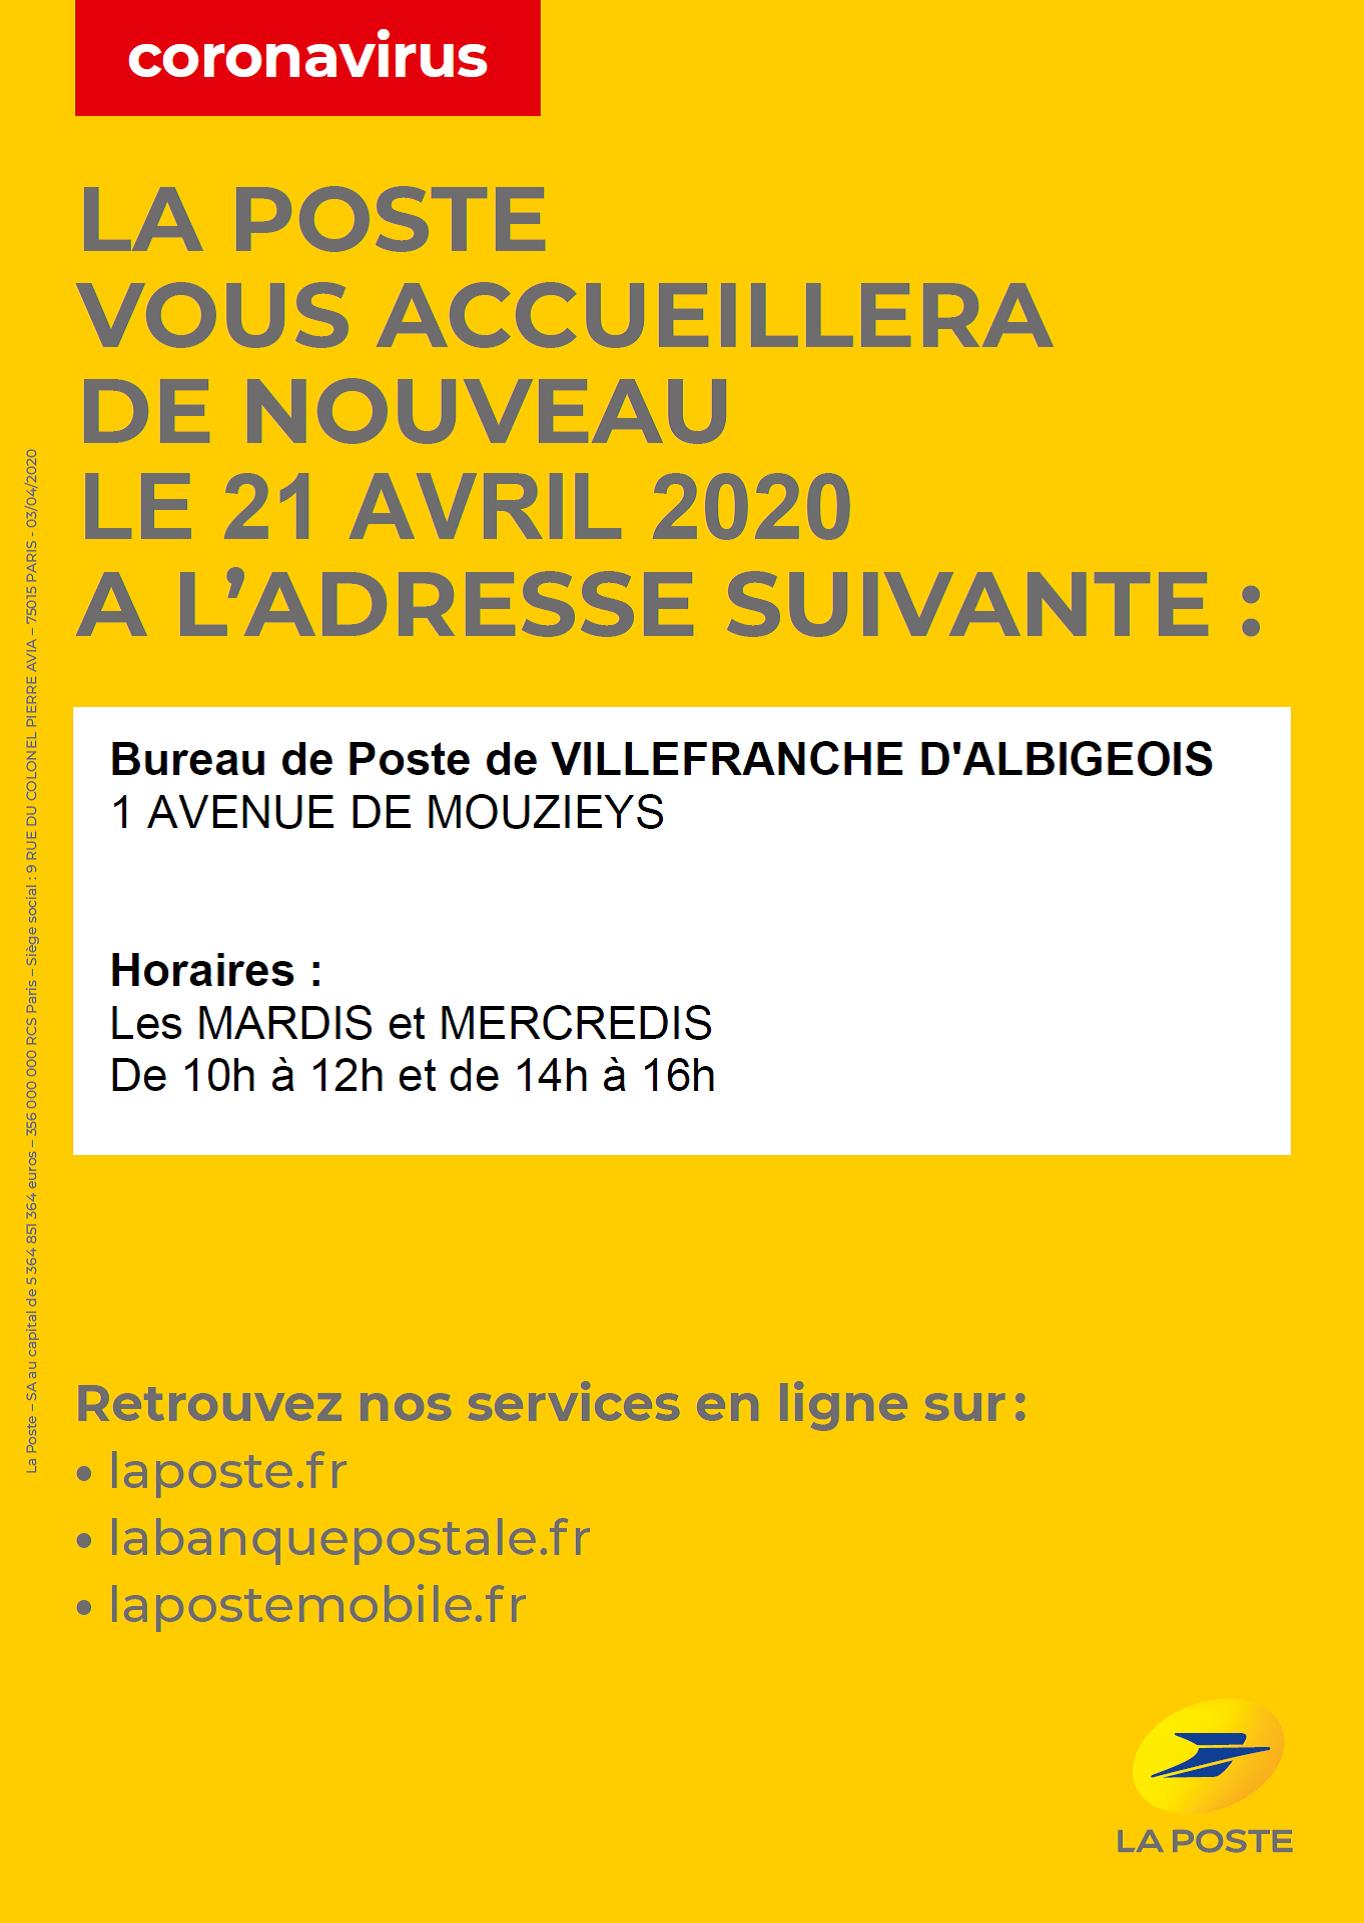 Le guichet de la Poste de Villefranche rouvre le mardi 21 avril 2020 !